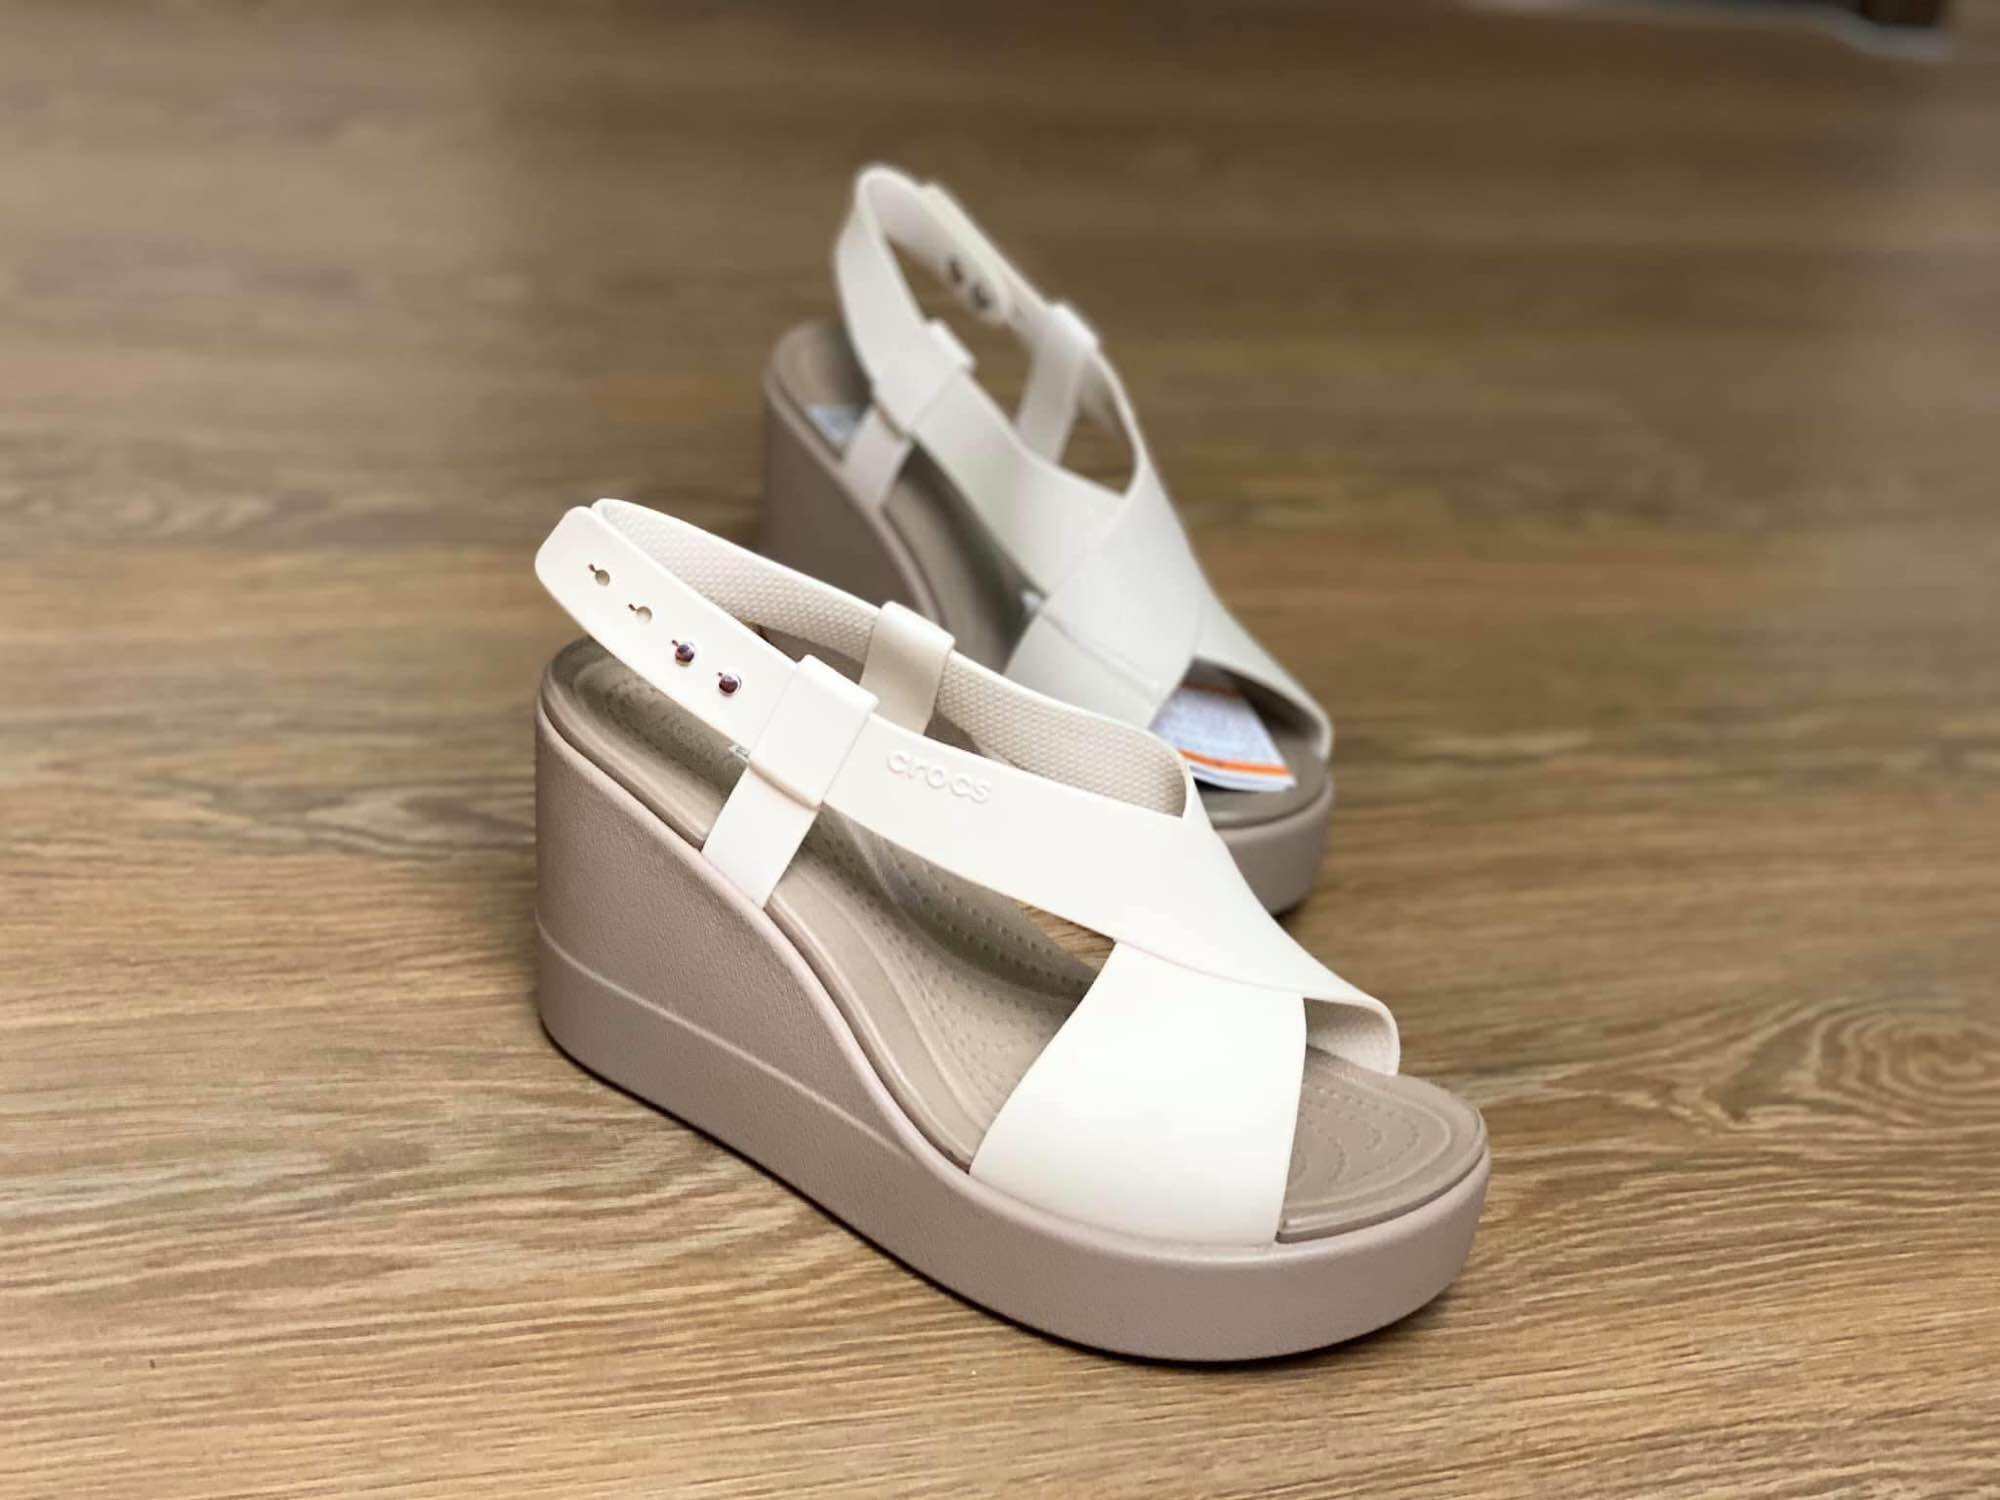 Sandal crocs broolynk cao 9cm chính hãng, c.roc.s shoes giầy dép crocs thời trang nam nữ, giầy dép đi mưa